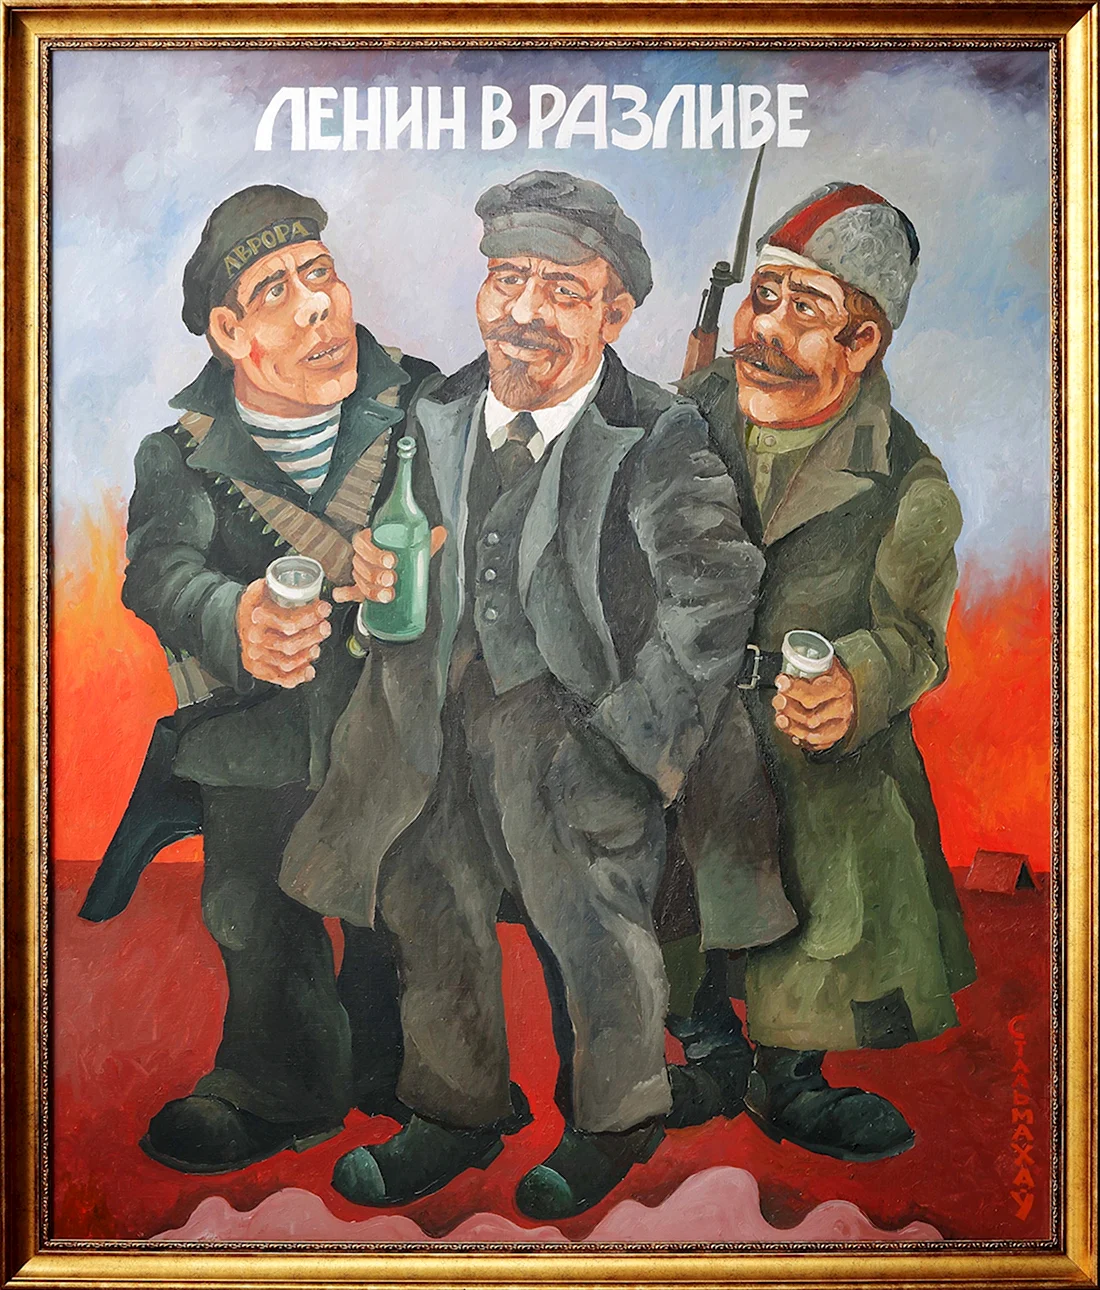 Карикатуры на советские плакаты. Анекдот в картинке